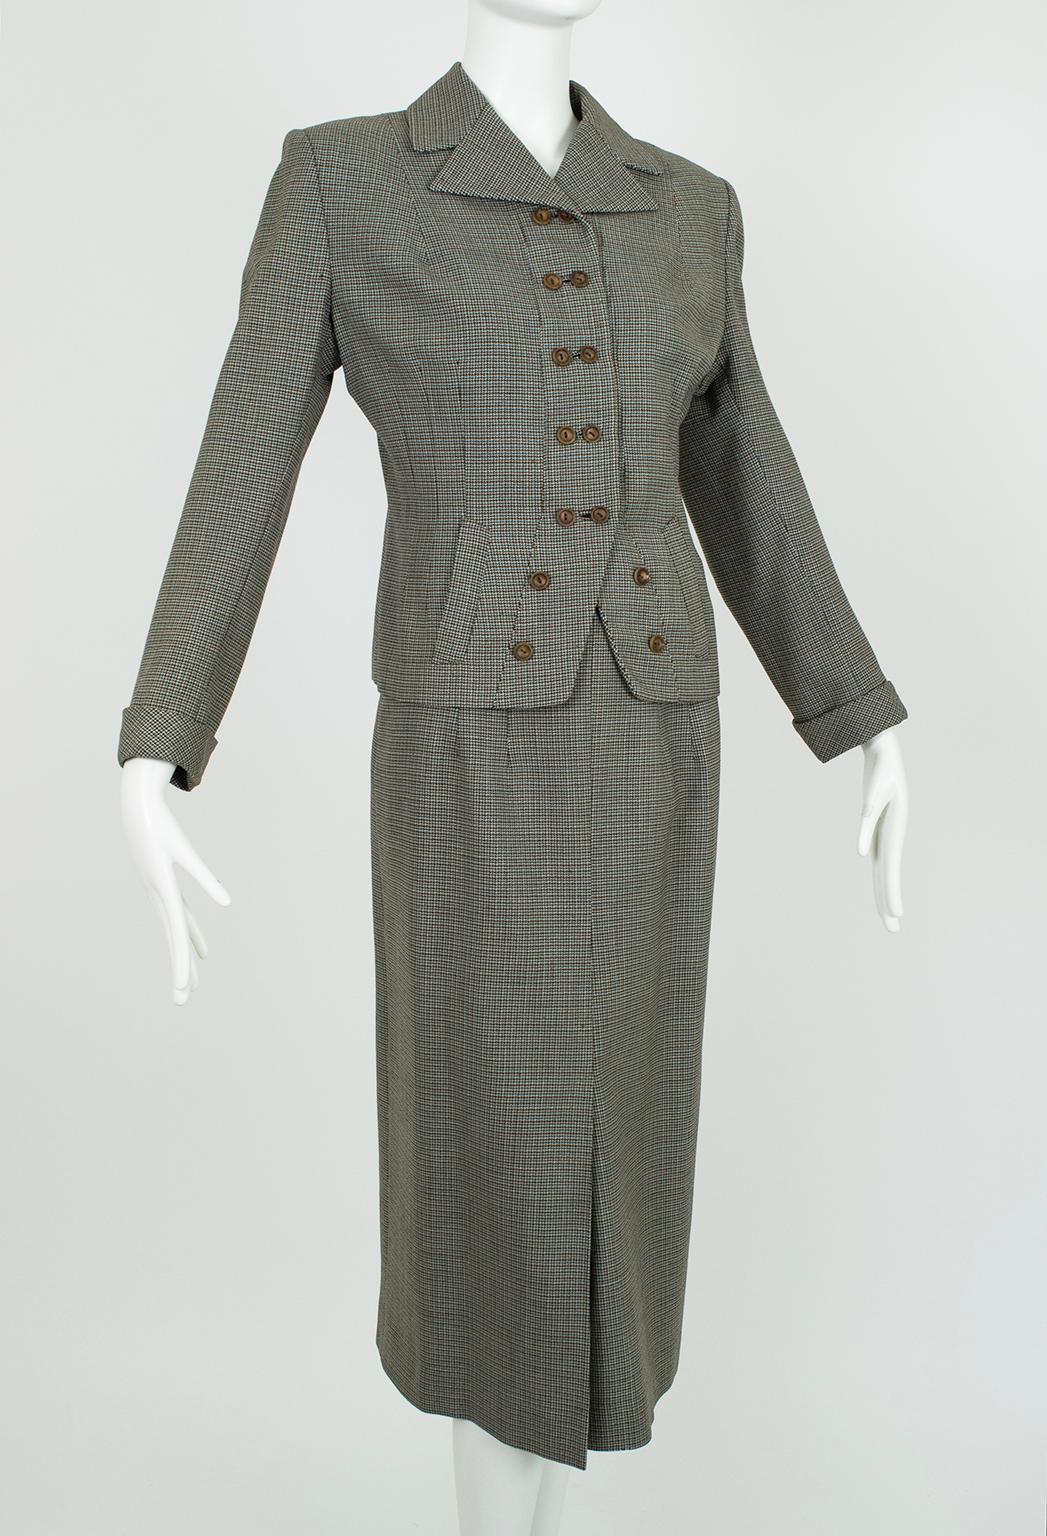 Un costume de Girl Friday datant de la guerre, avec du style à revendre, malgré son adhésion aux rations de vêtements. Le détail percutant de la veste à double bouton est emblématique de l'utilisation créative de matériaux de tous les jours à une